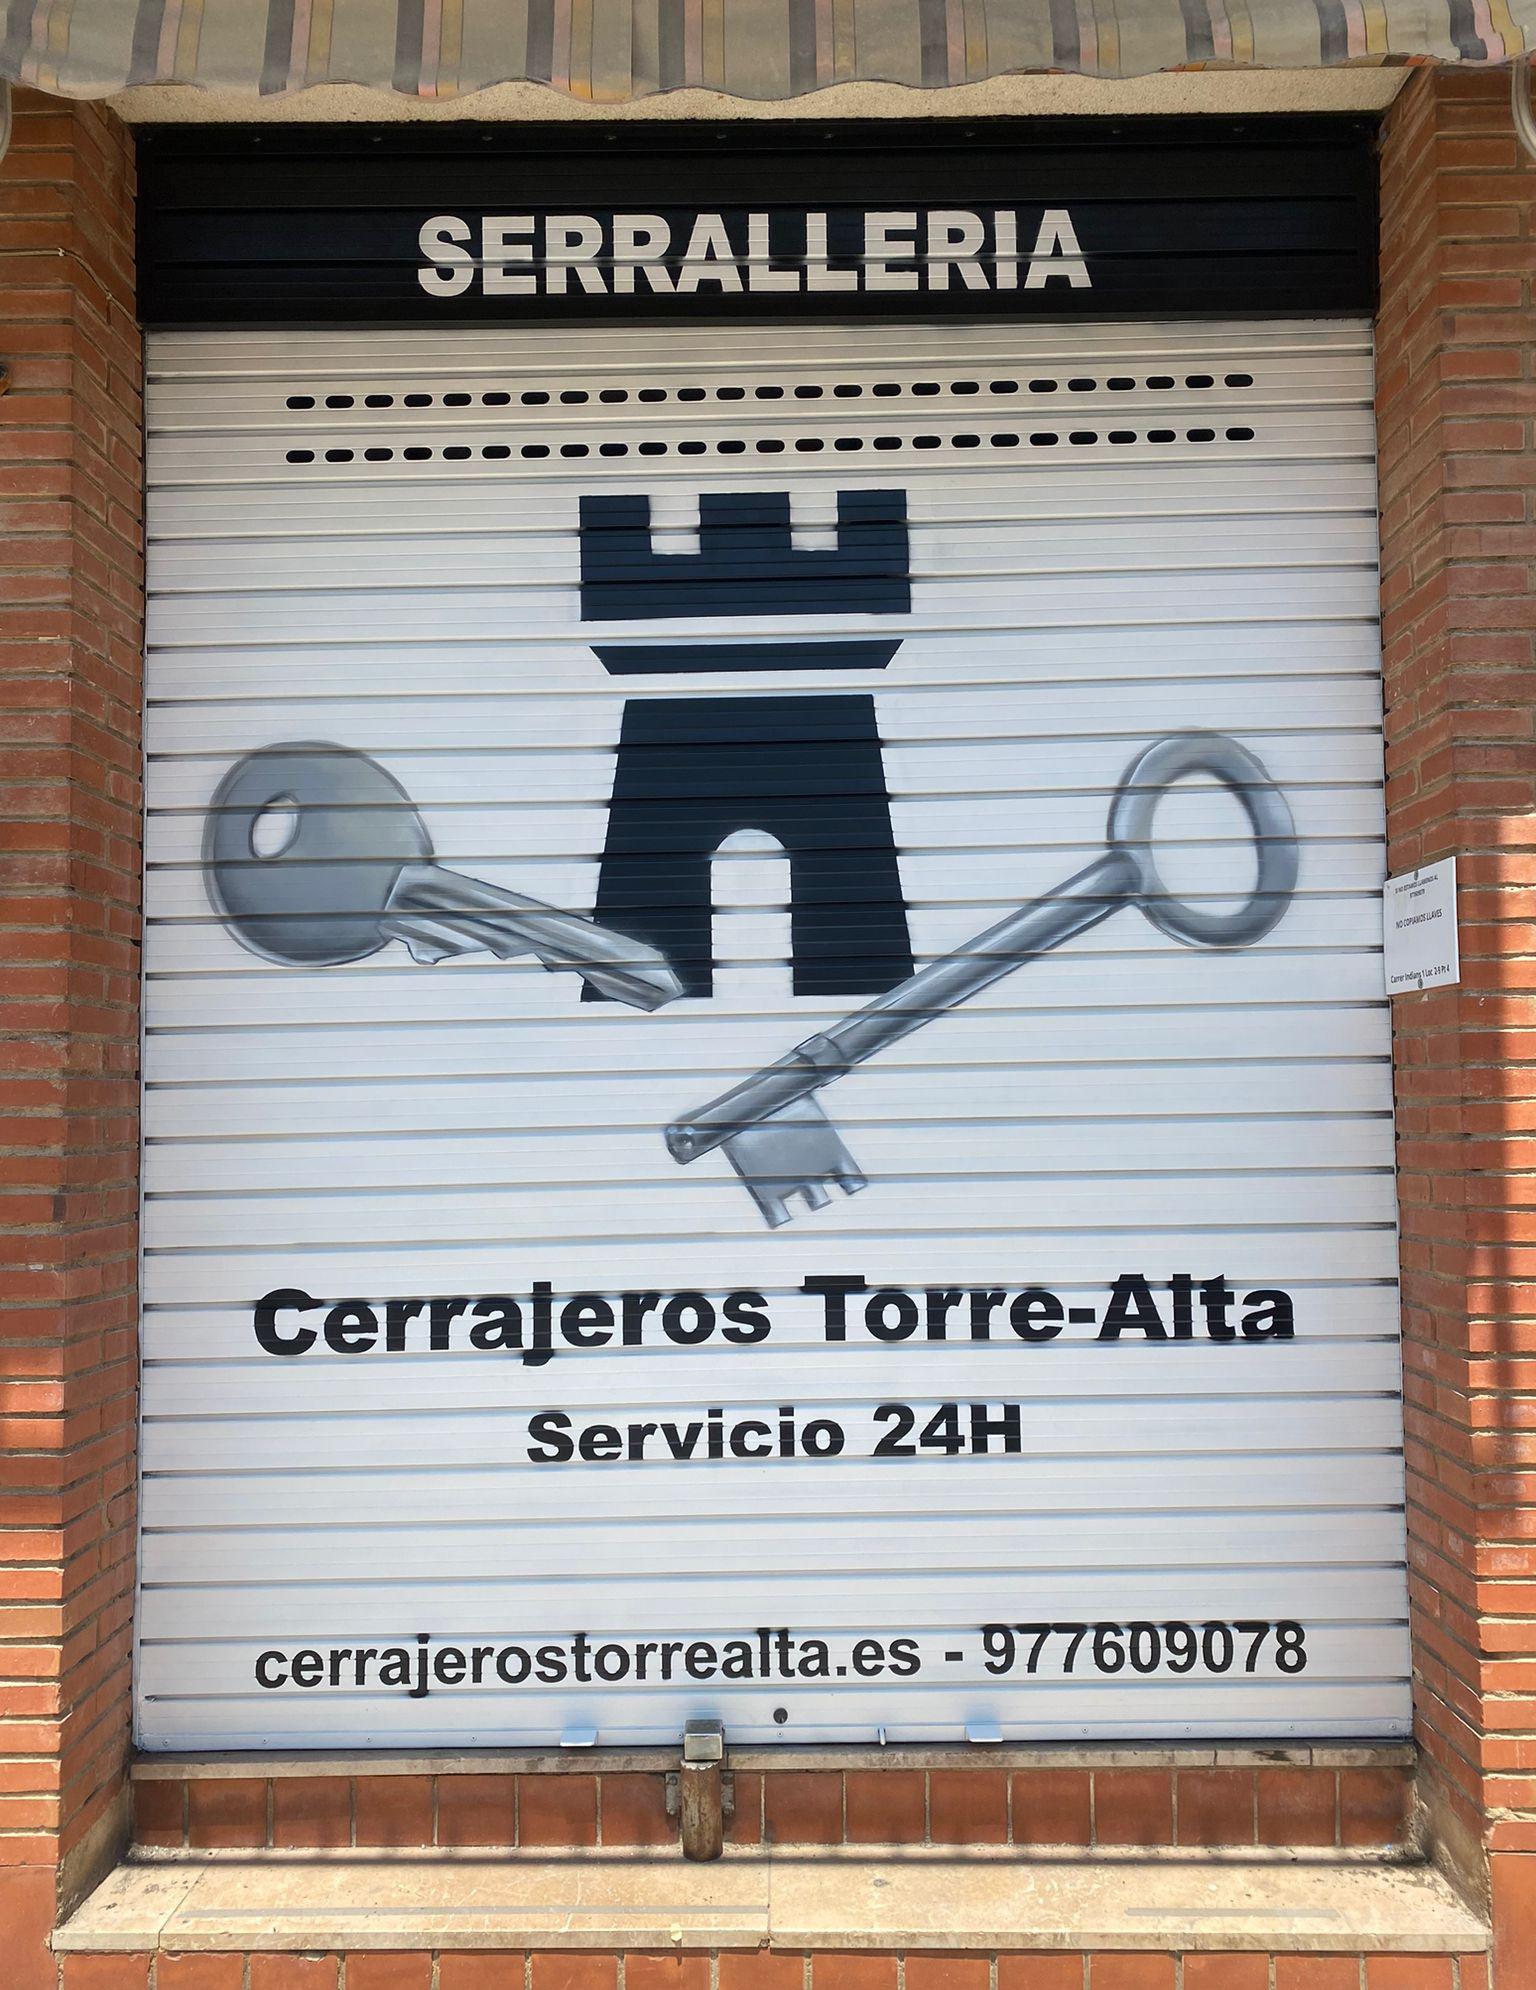 Images Cerrajeros Torre-Alta